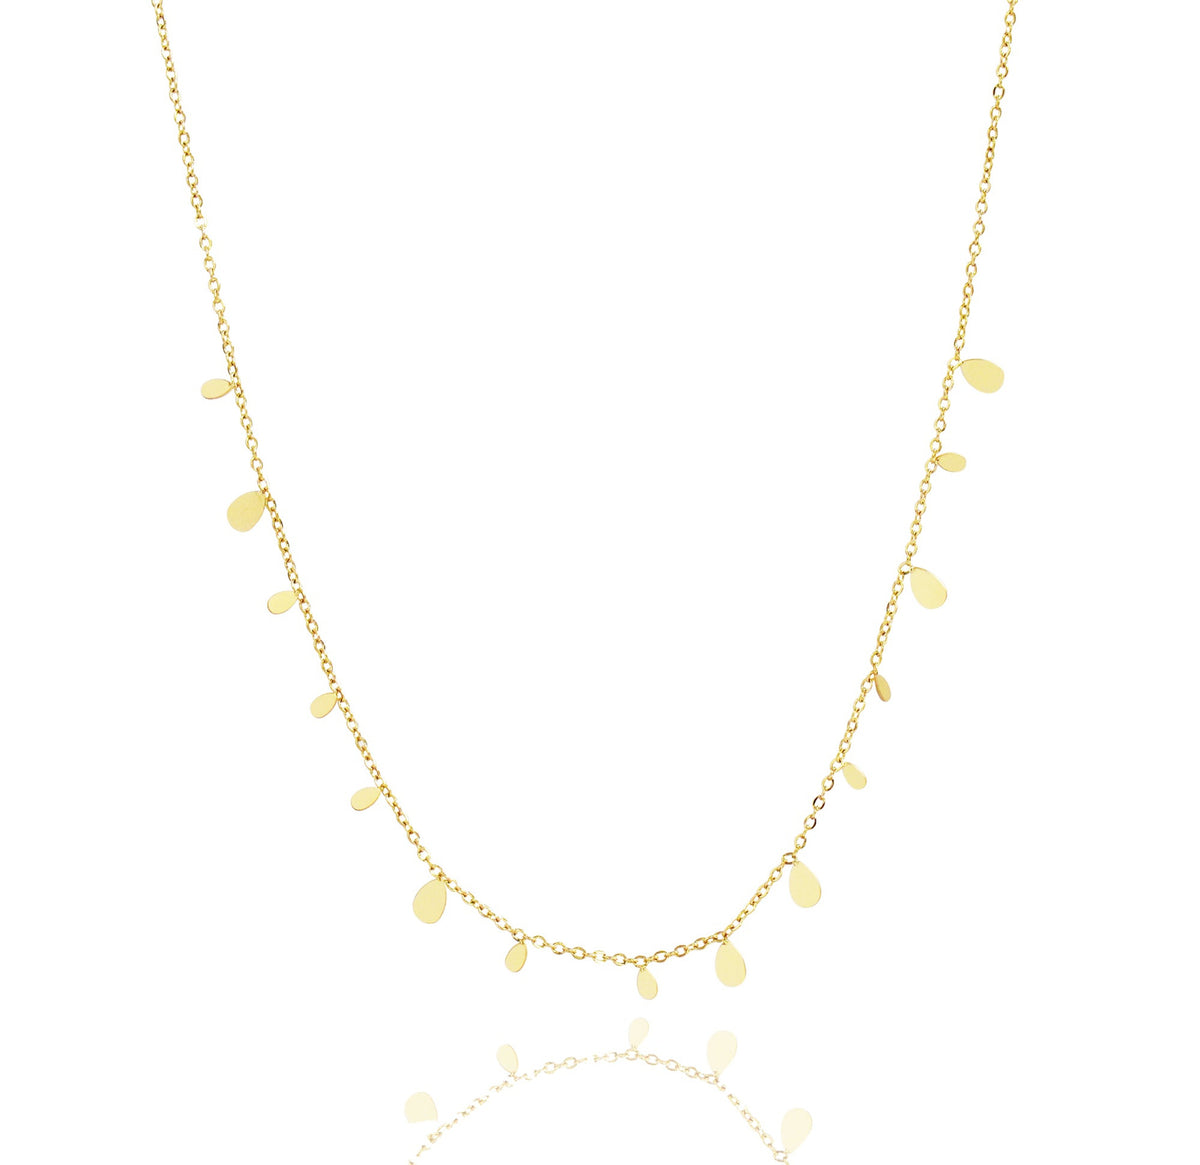 gold tear drop necklace waterproof jewelry